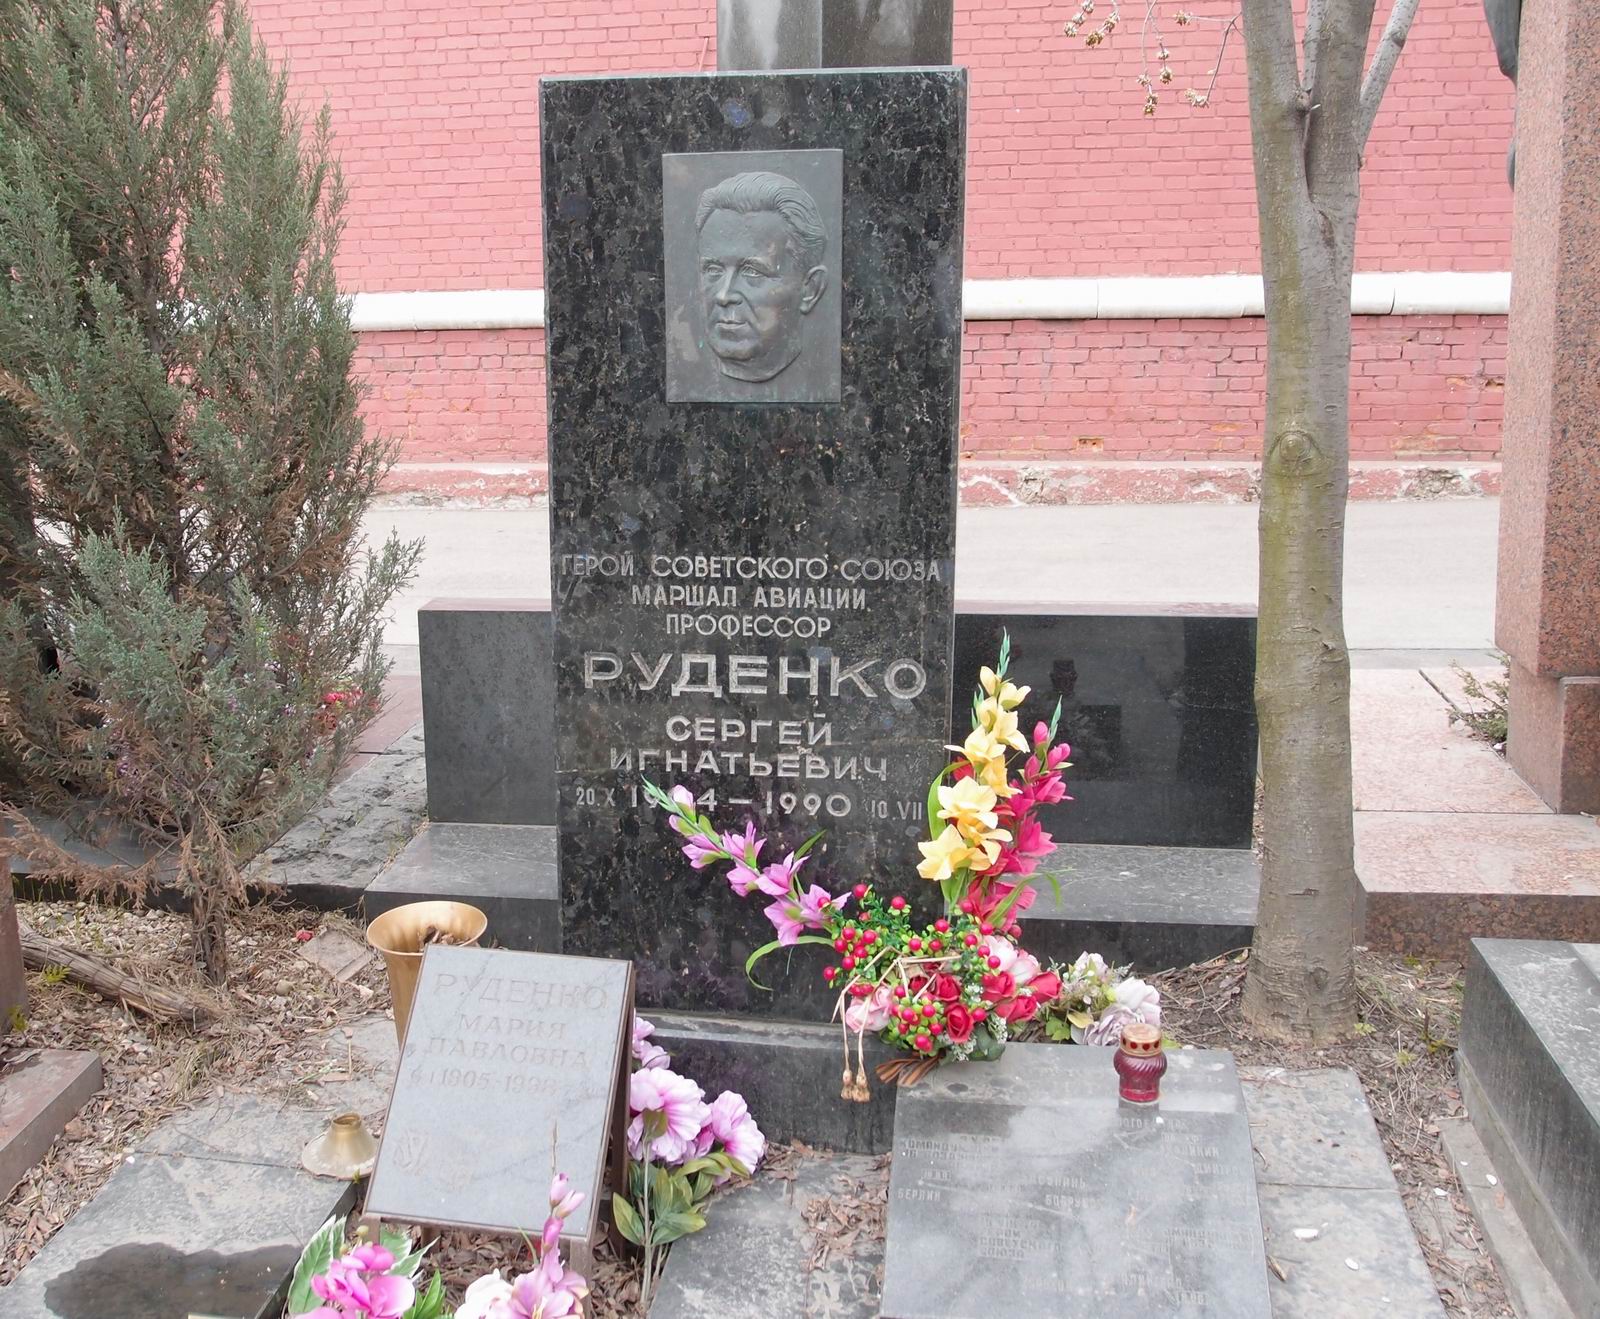 Памятник на могиле Руденко С.И. (1904-1990), ск. А.Газалиев, арх. Б.Шехура, на Новодевичьем кладбище (11-2-4).